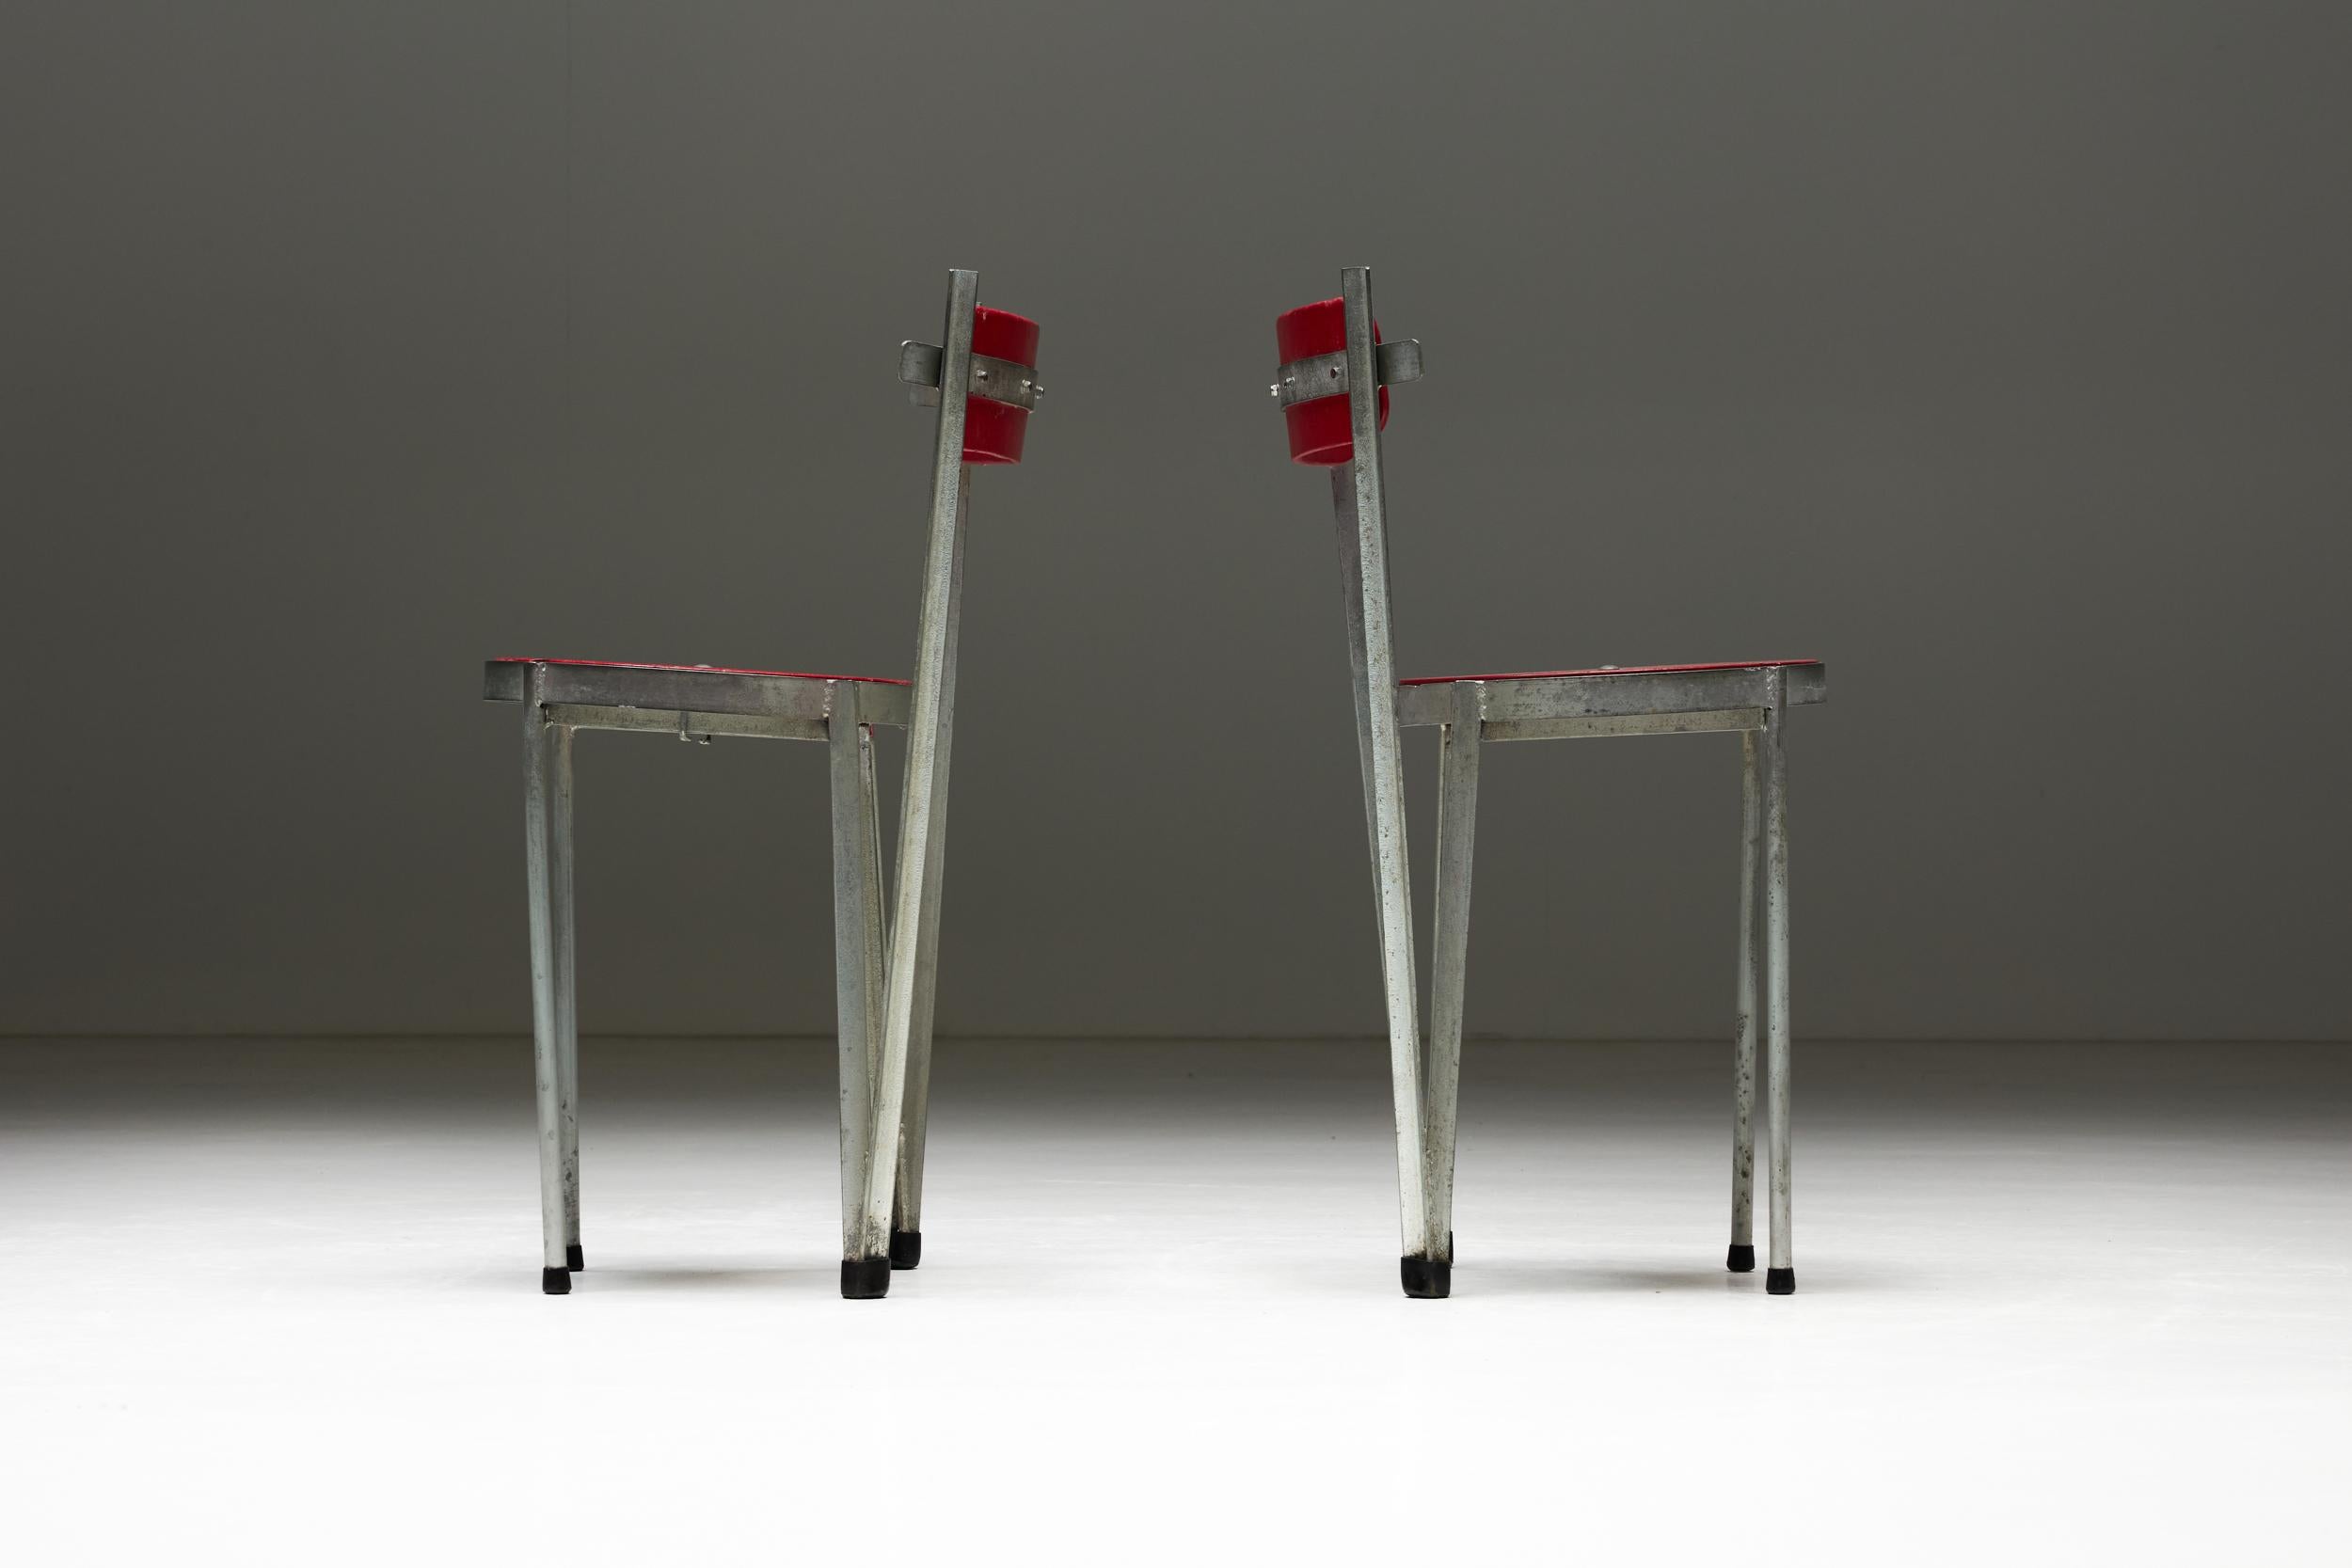 Chaises industrielles présentant une combinaison frappante d'une assise et d'un dossier en bois rouge, exsudant une esthétique audacieuse et vibrante. Les pieds robustes en acier galvanisé offrent un support solide, garantissant durabilité et